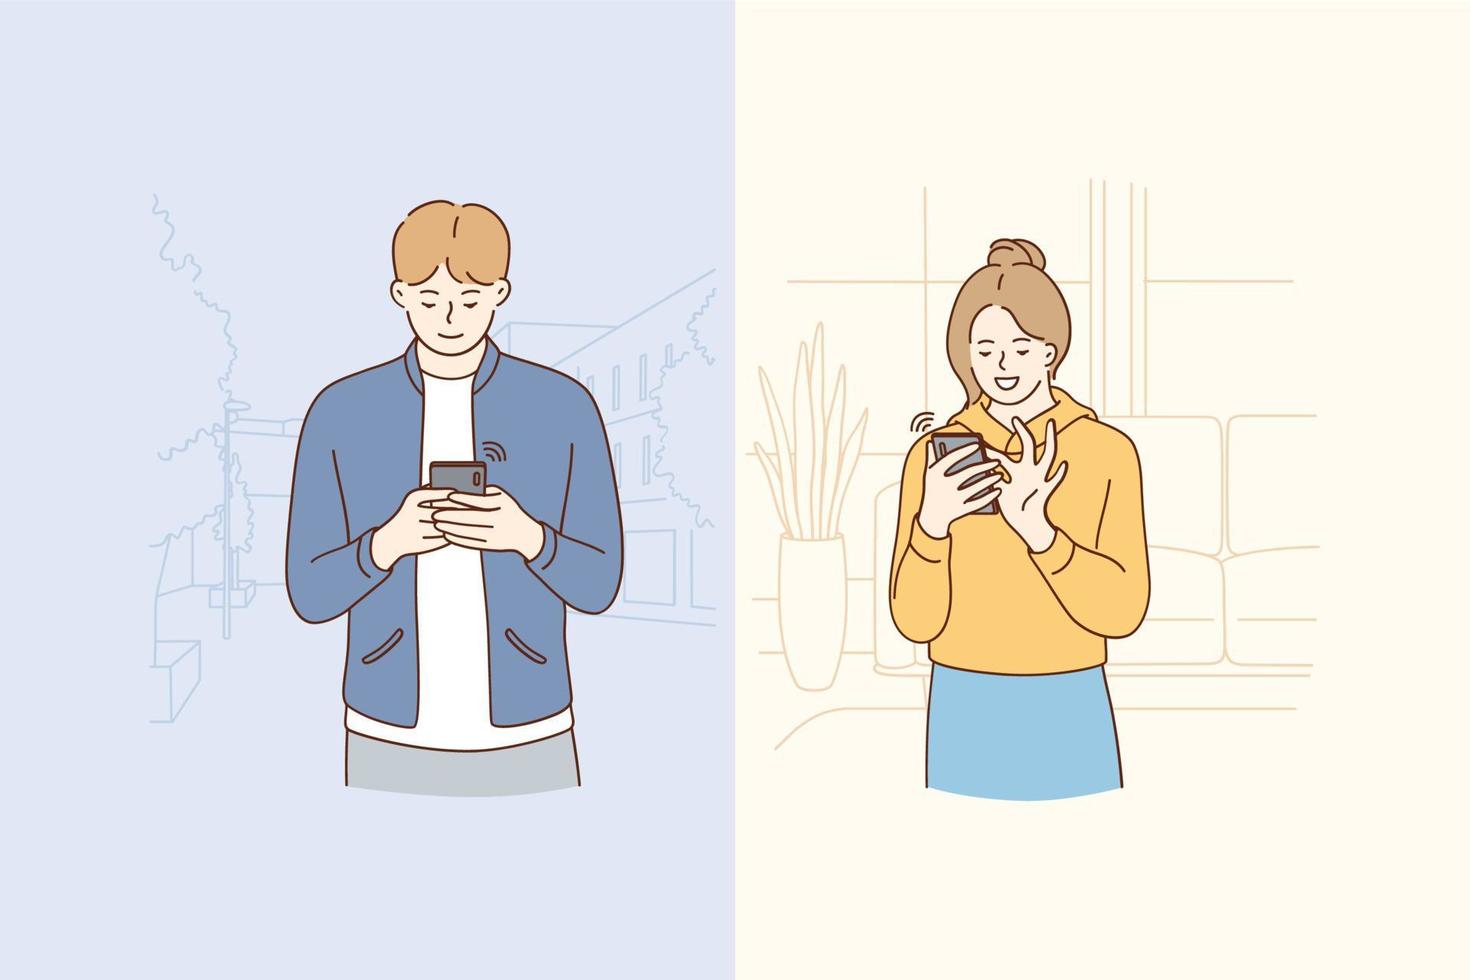 concepto de chat y tecnología en línea. jóvenes personajes de dibujos animados de pareja sonriente chateando y comunicándose en línea en teléfonos inteligentes por messenger y saliendo con ilustraciones de vectores en línea